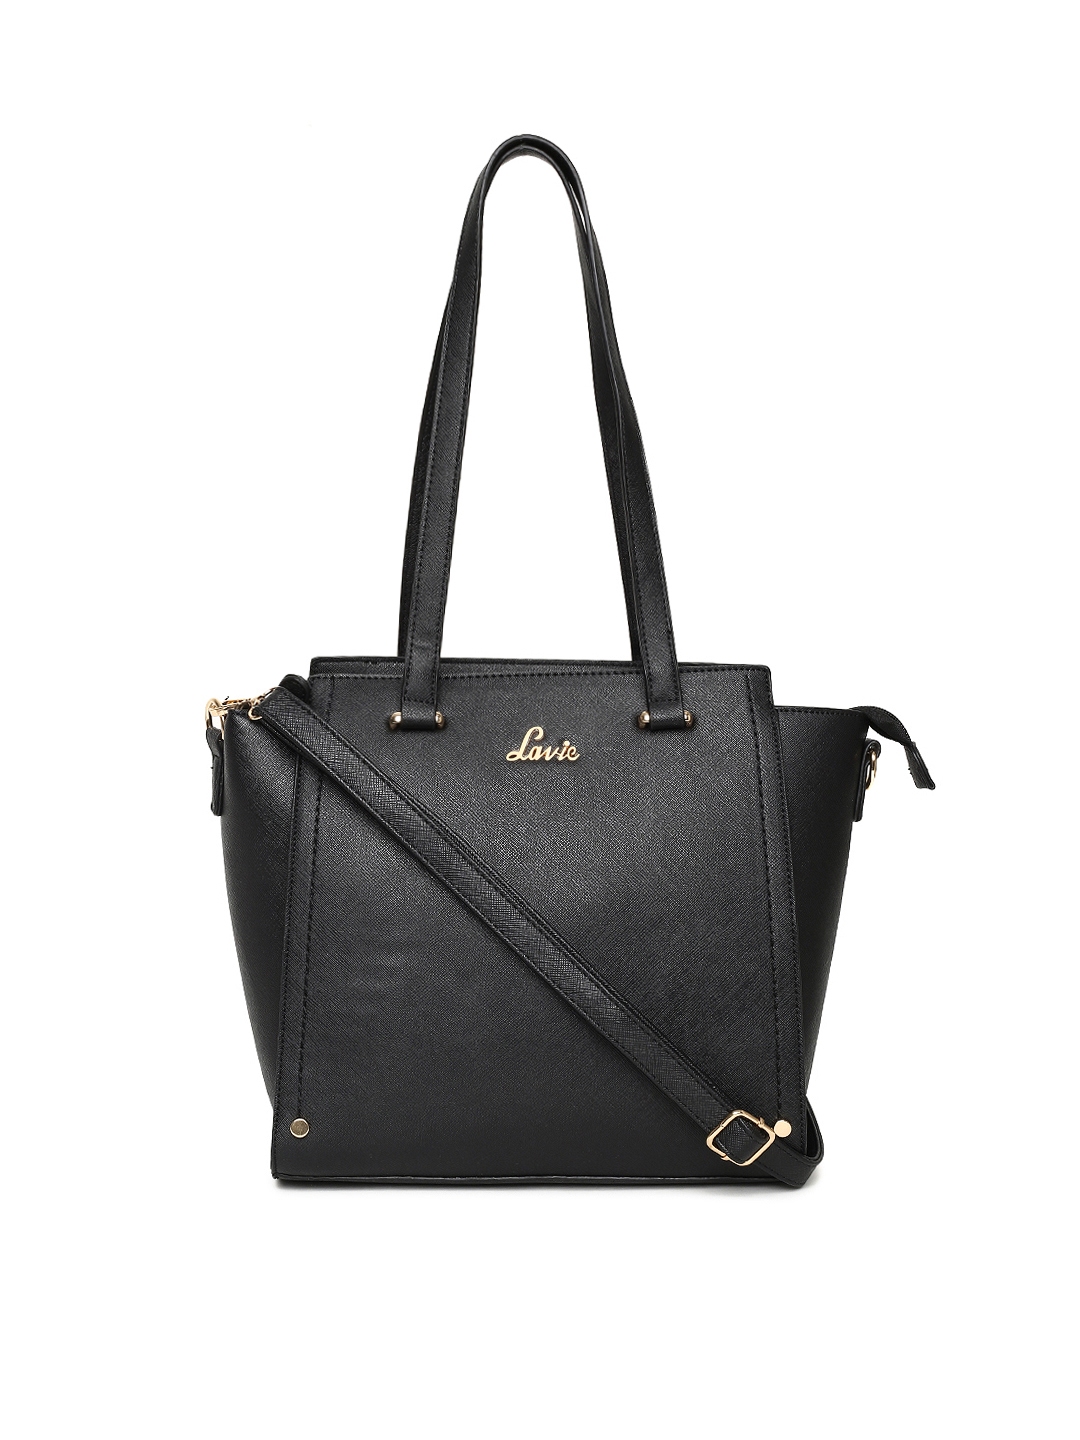 Lavie womens Berry Black Tote Bag : : Fashion